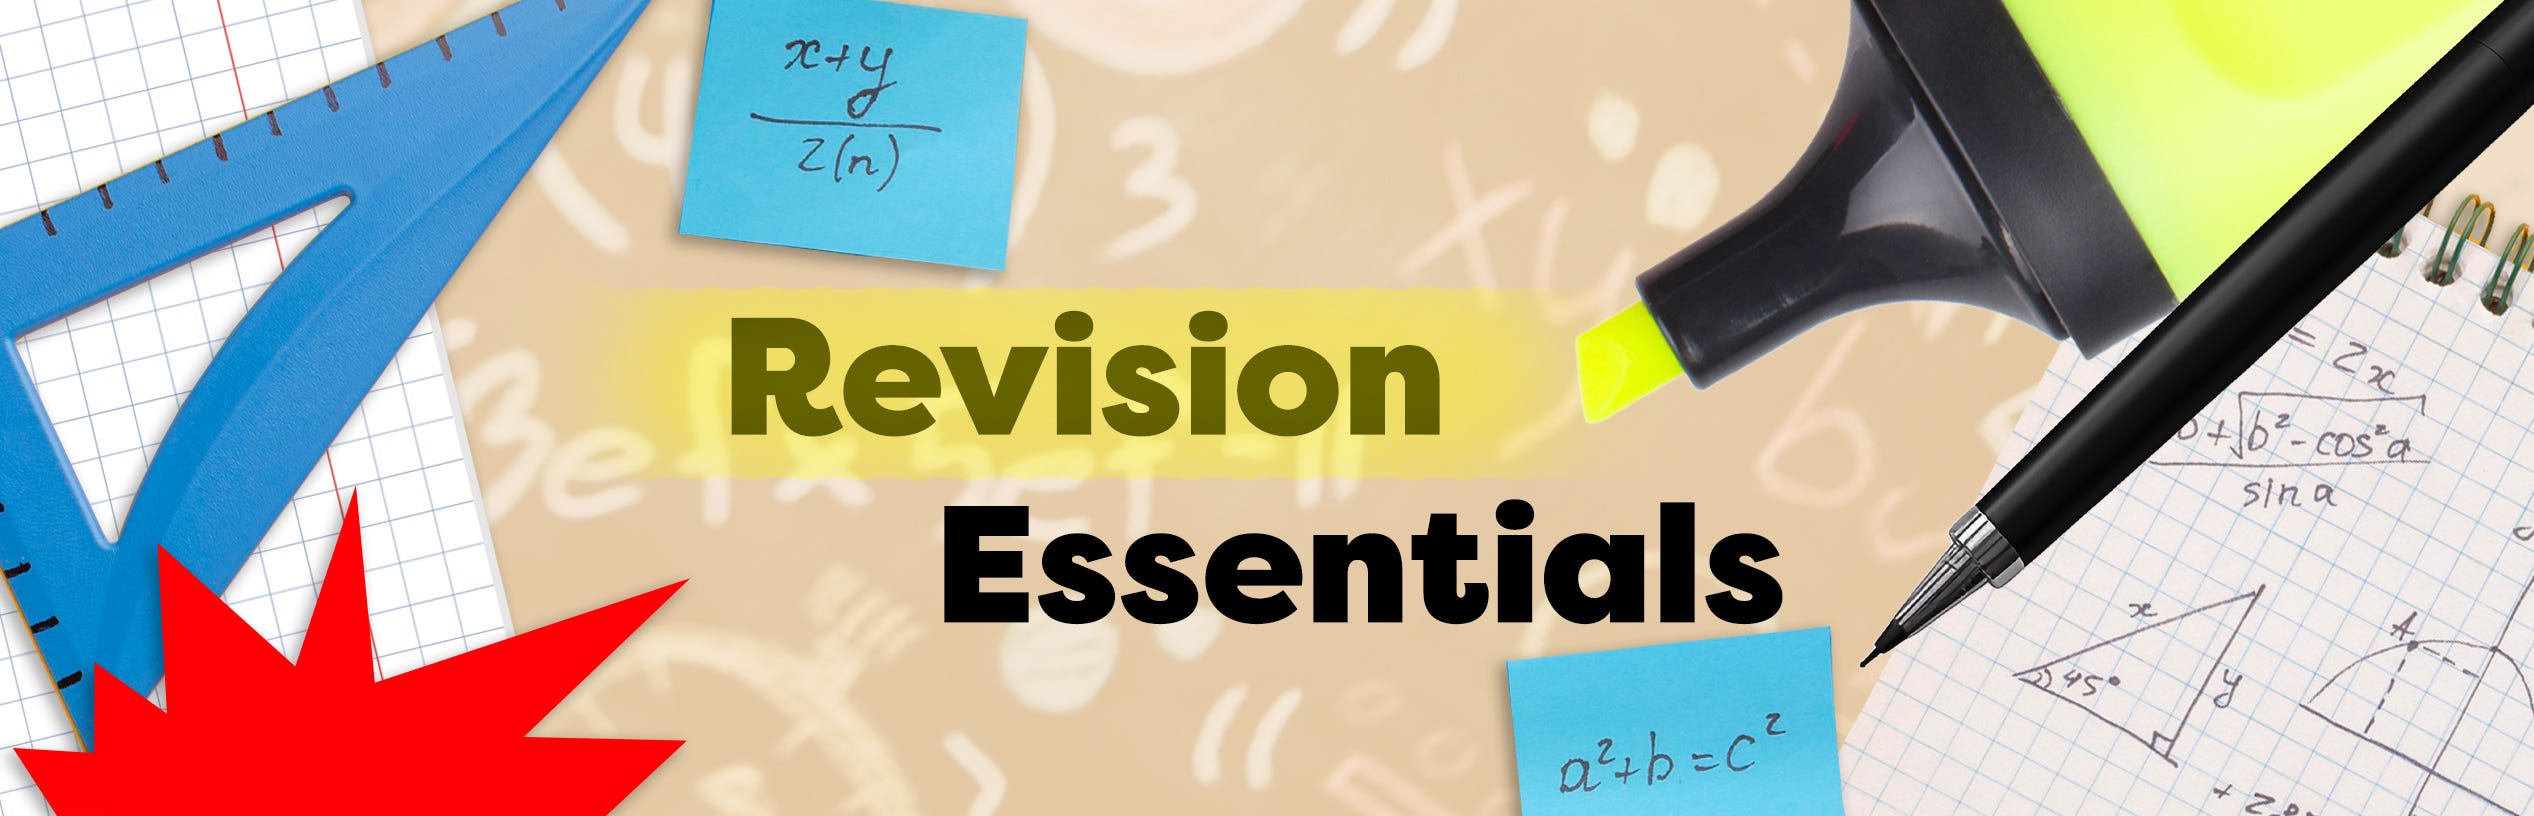 Revision Essentials